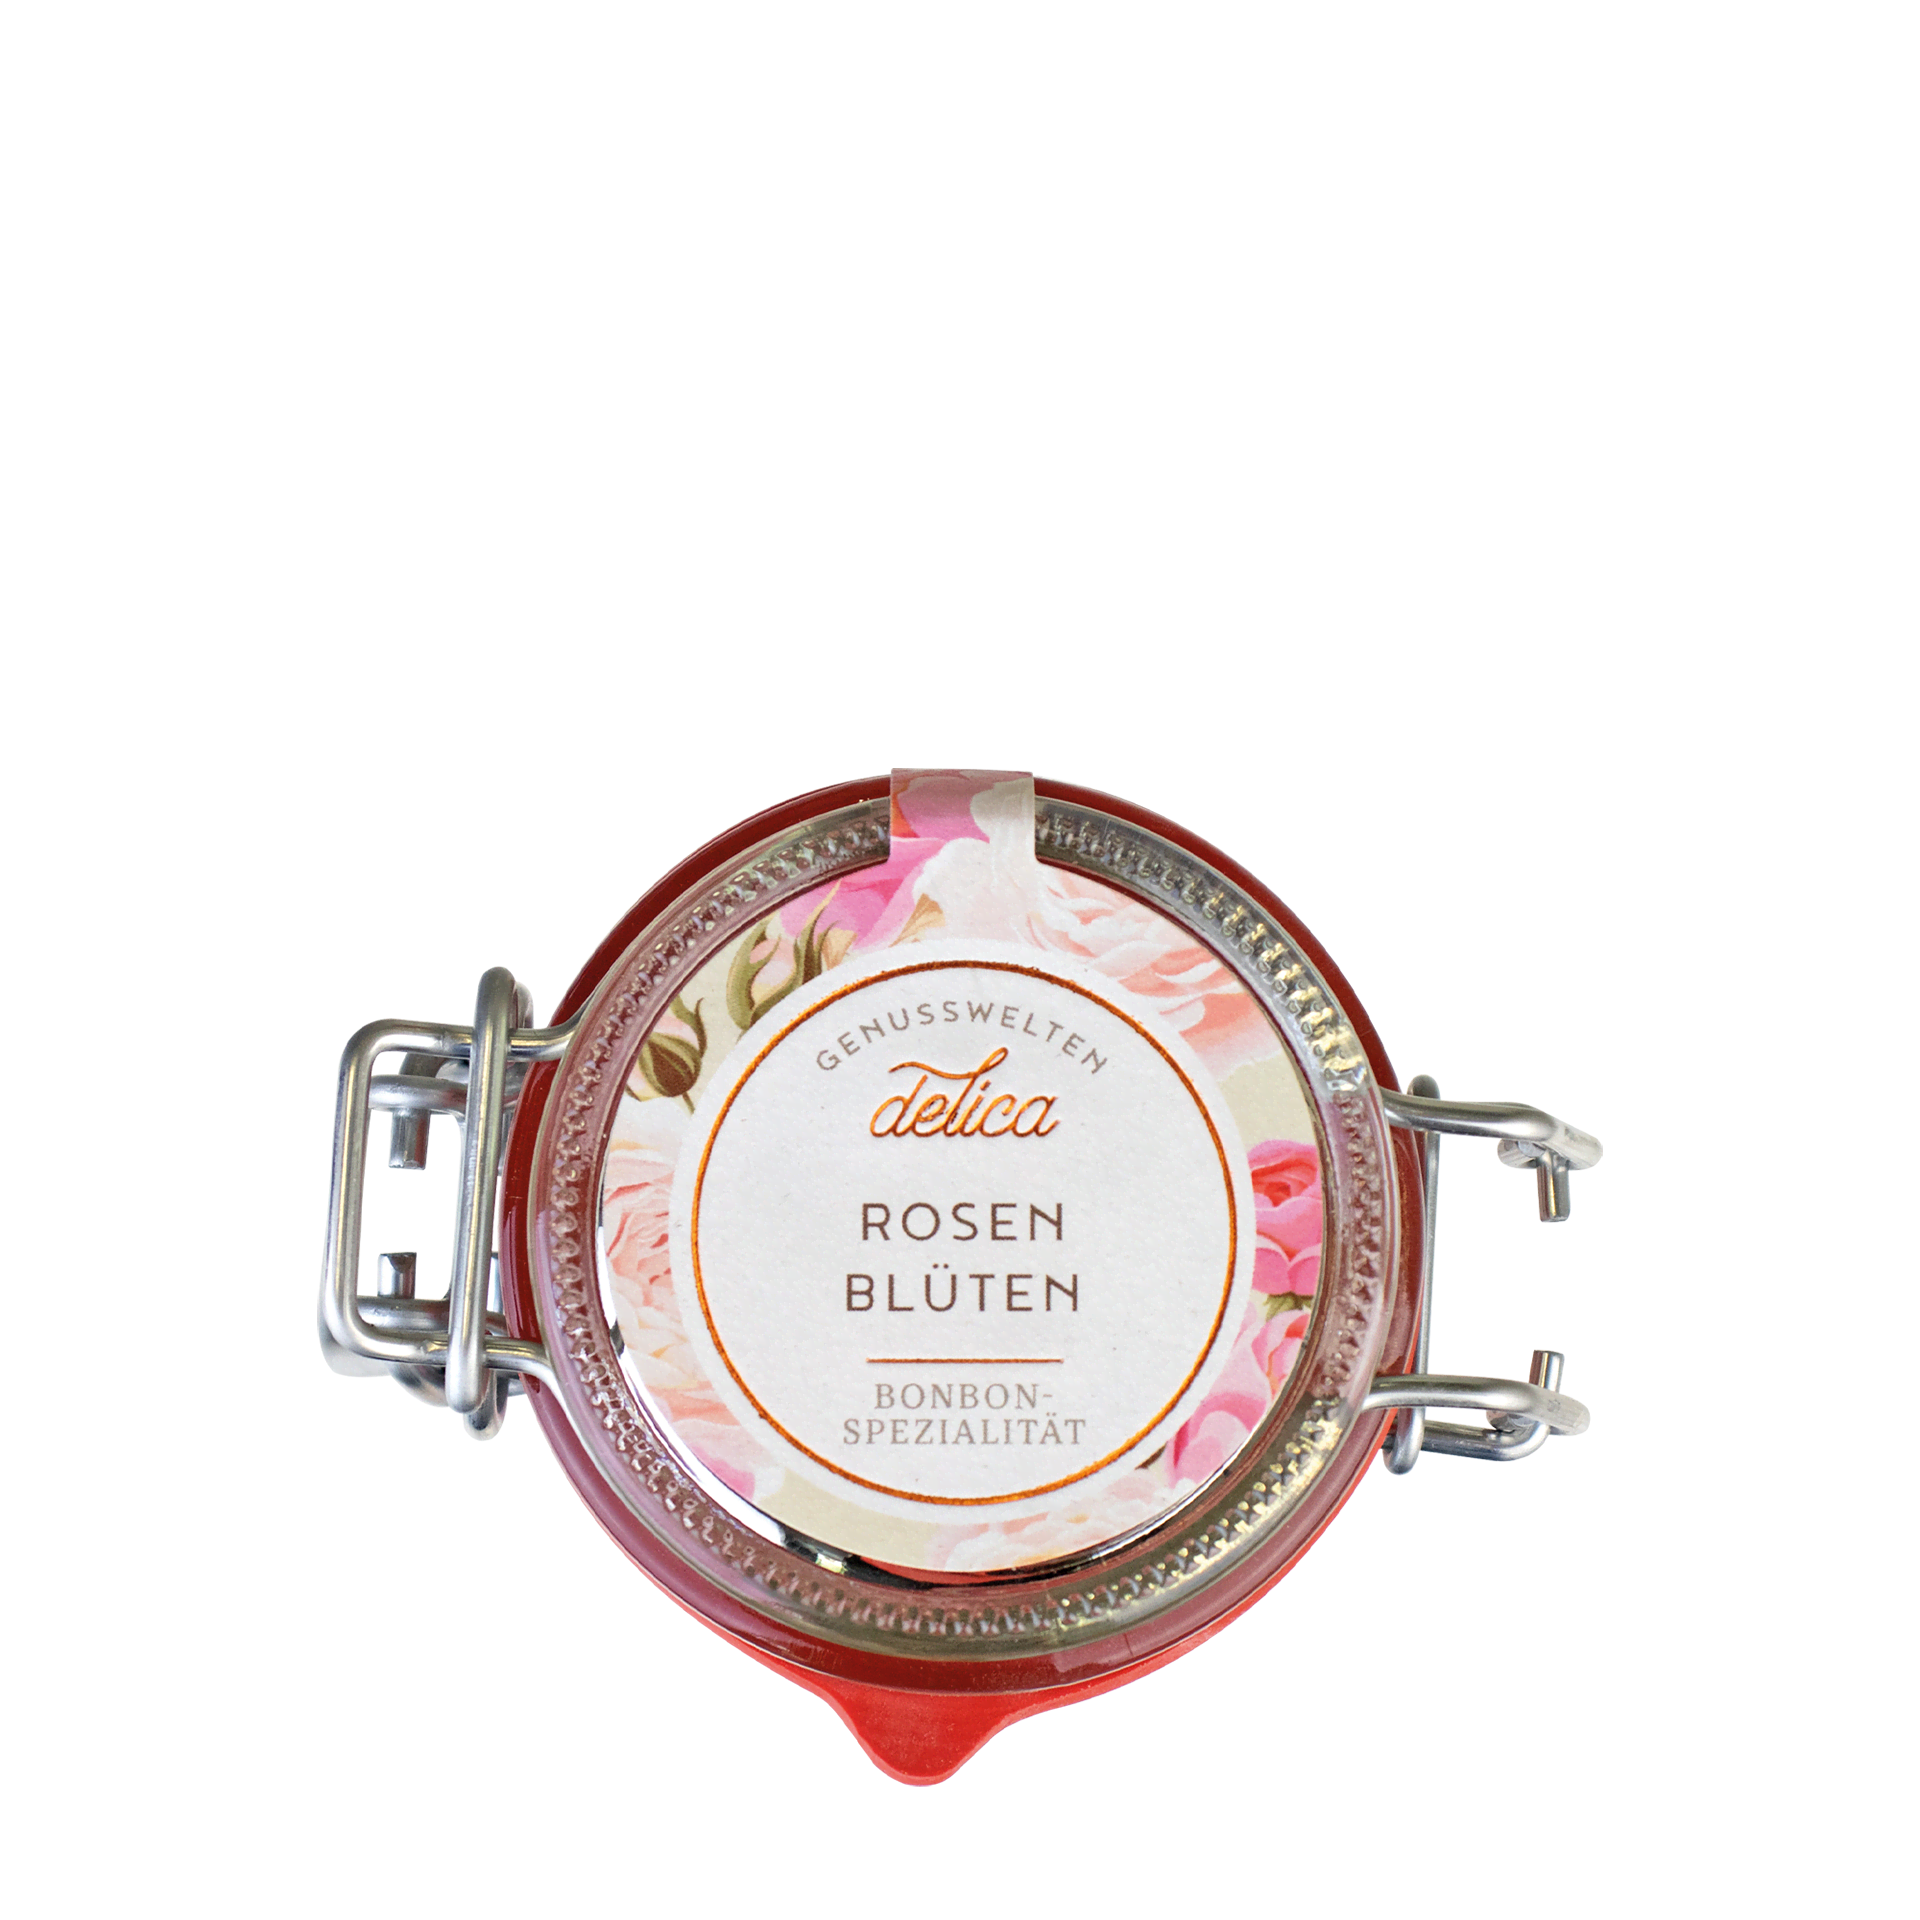 Rosenblüten Bonbon-Spezialität